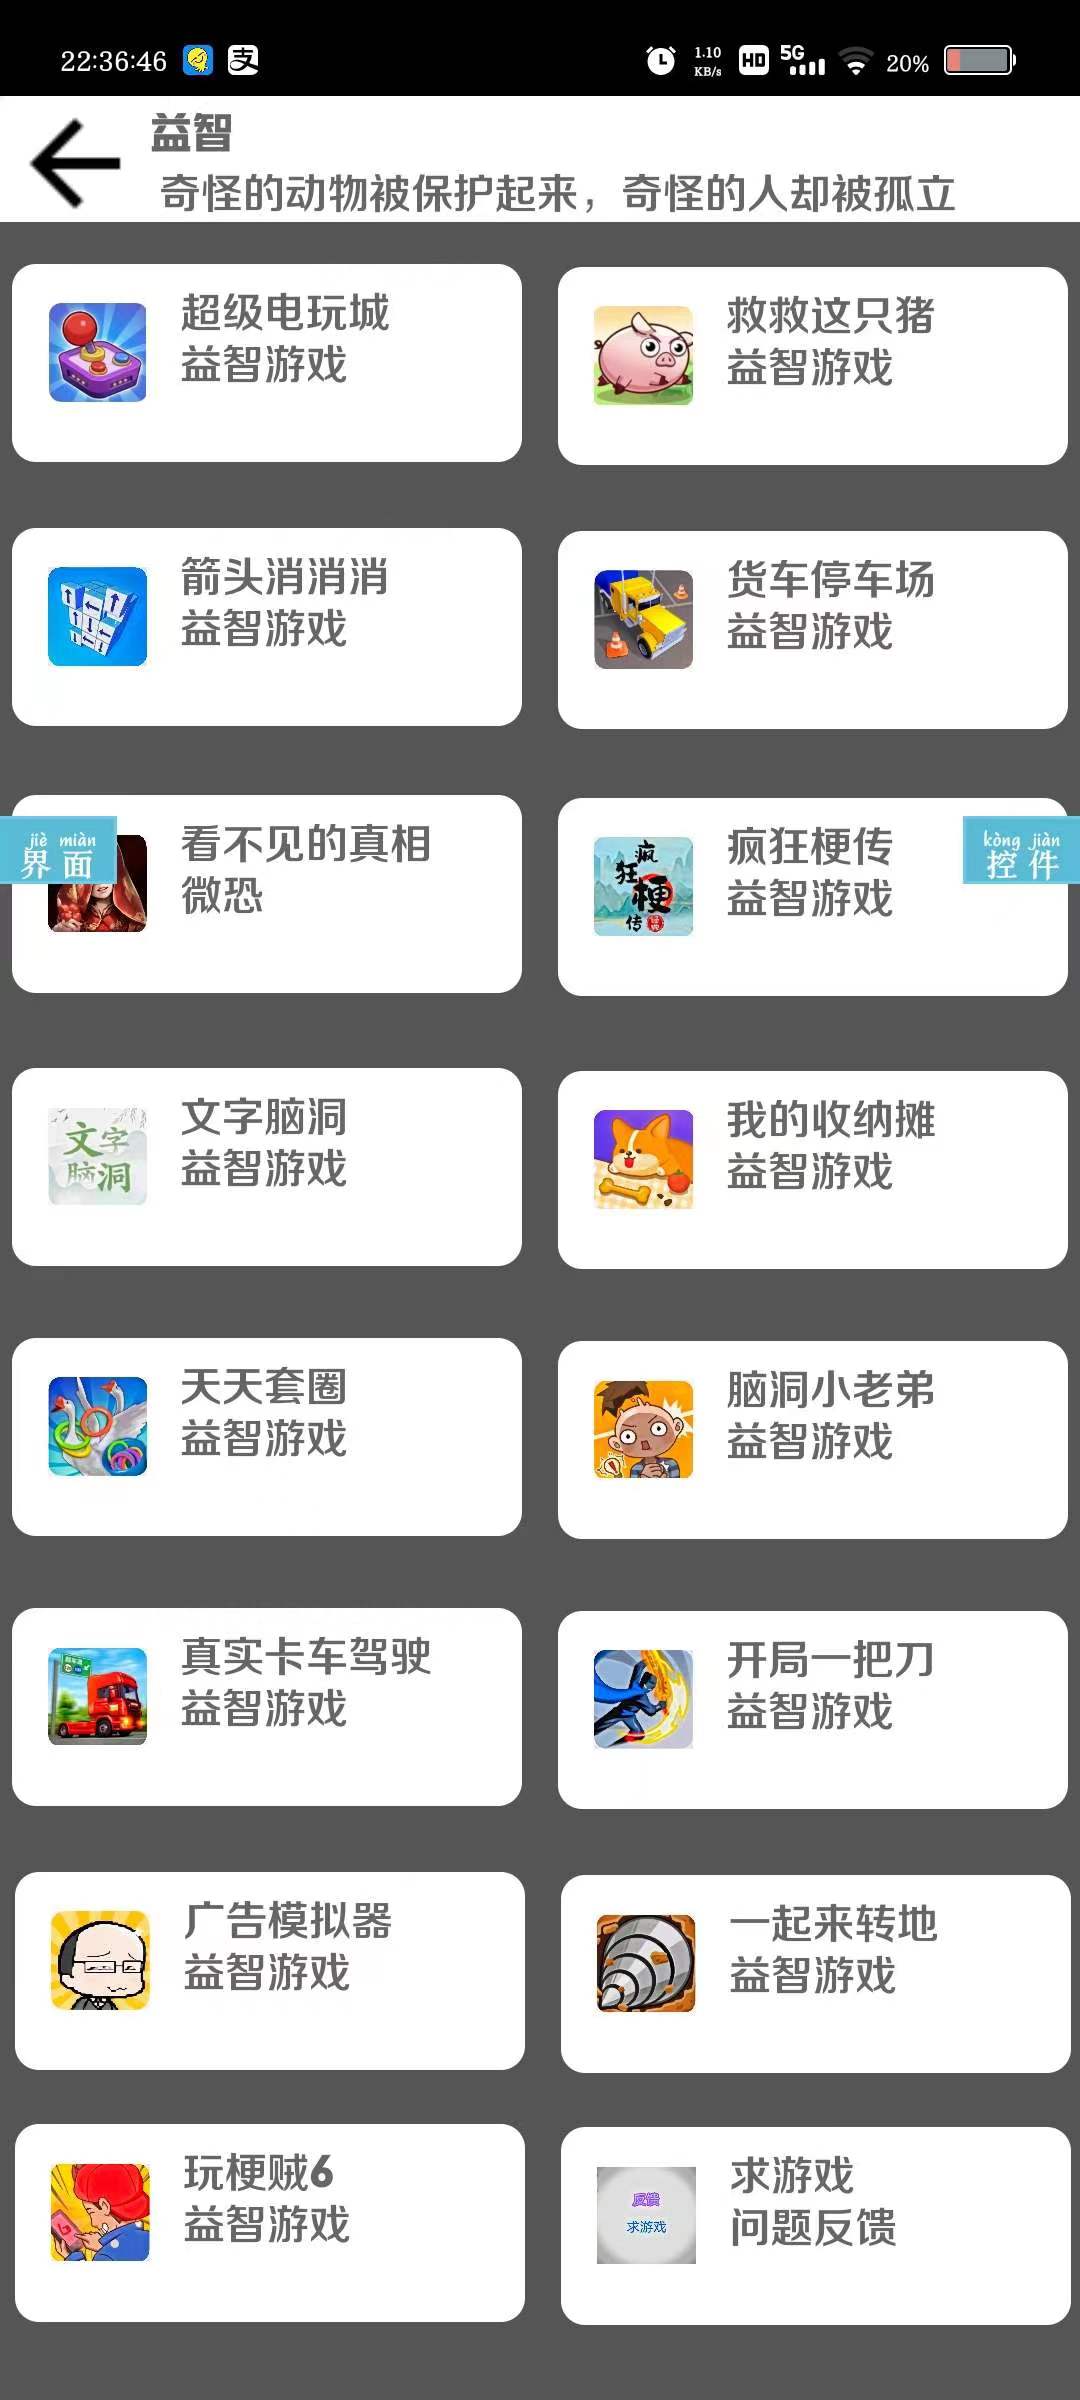 抖音小游戏免广告合集 屠城辅助网www.tcfz1.com829